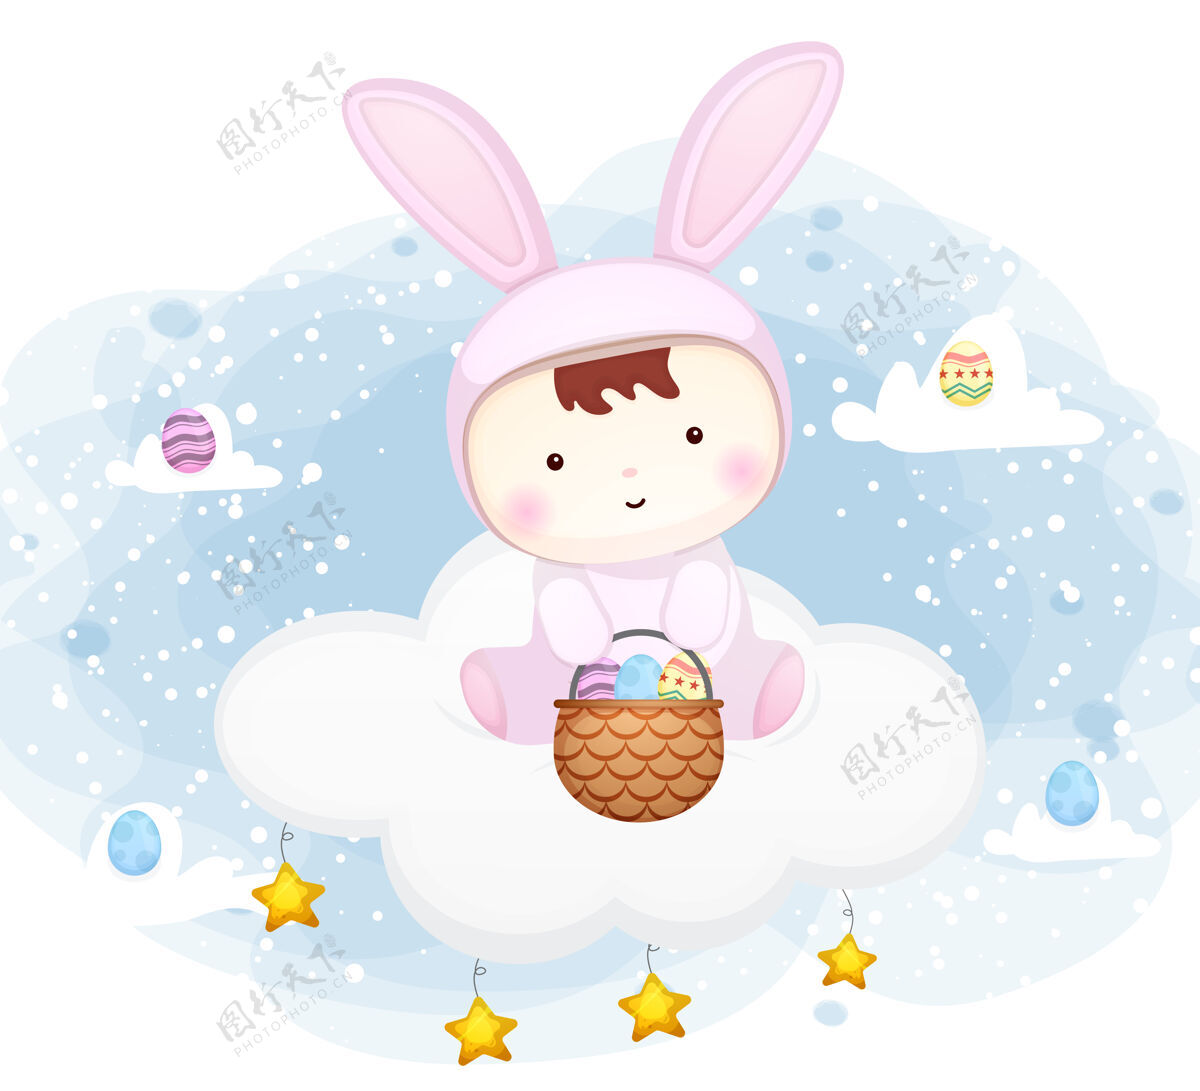 坐着可爱的小宝宝穿着小兔子的衣服坐在云端与复活节彩蛋卡通人物孩子兔子鸡蛋